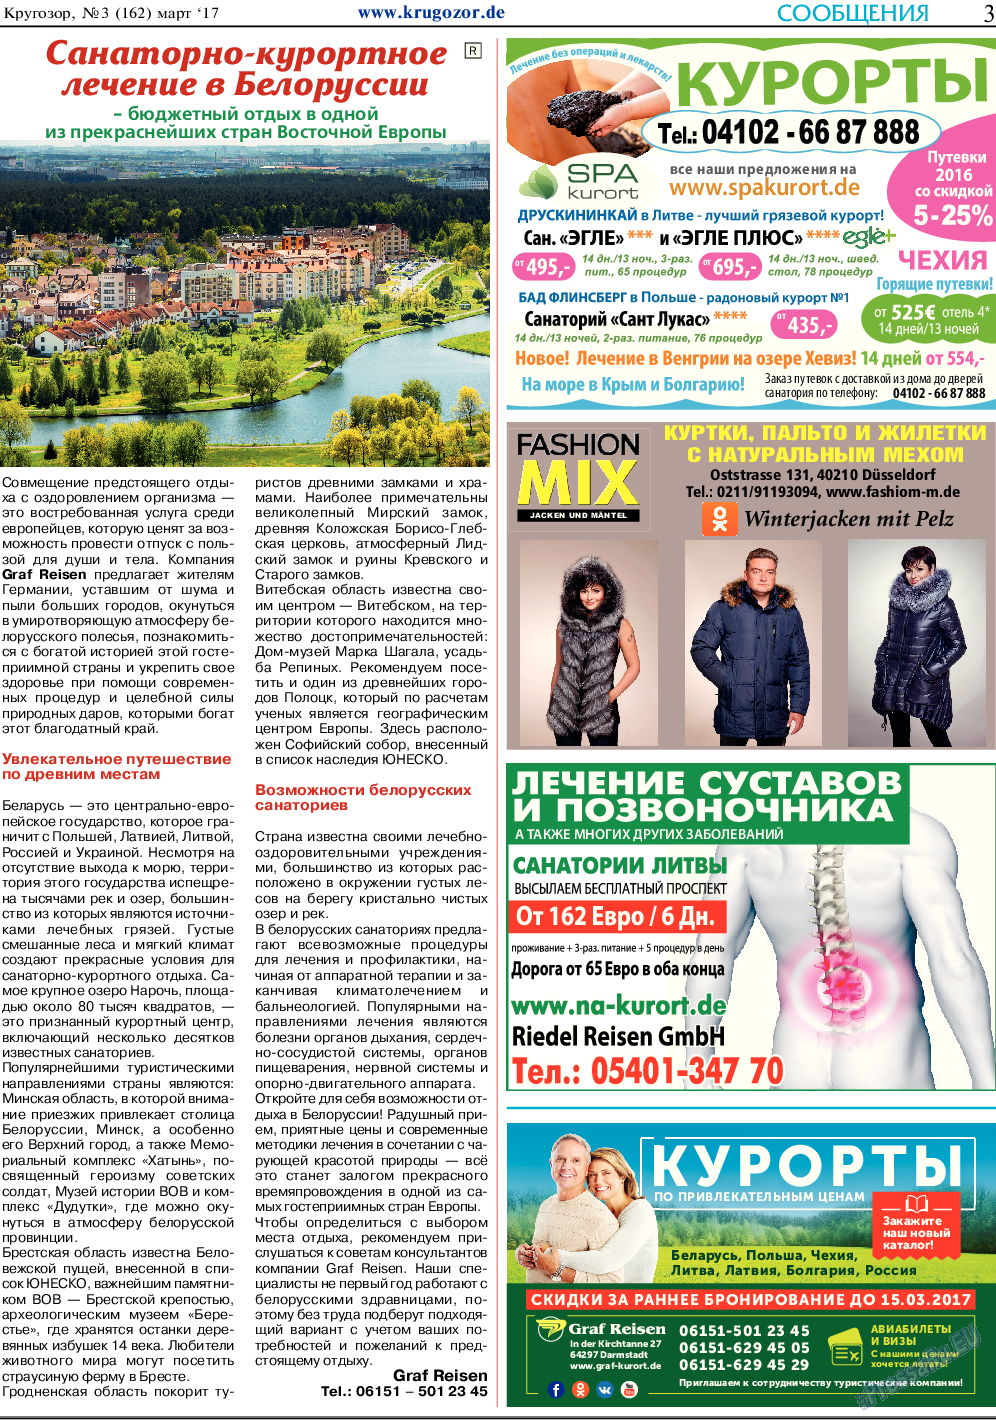 Кругозор, газета. 2017 №3 стр.3